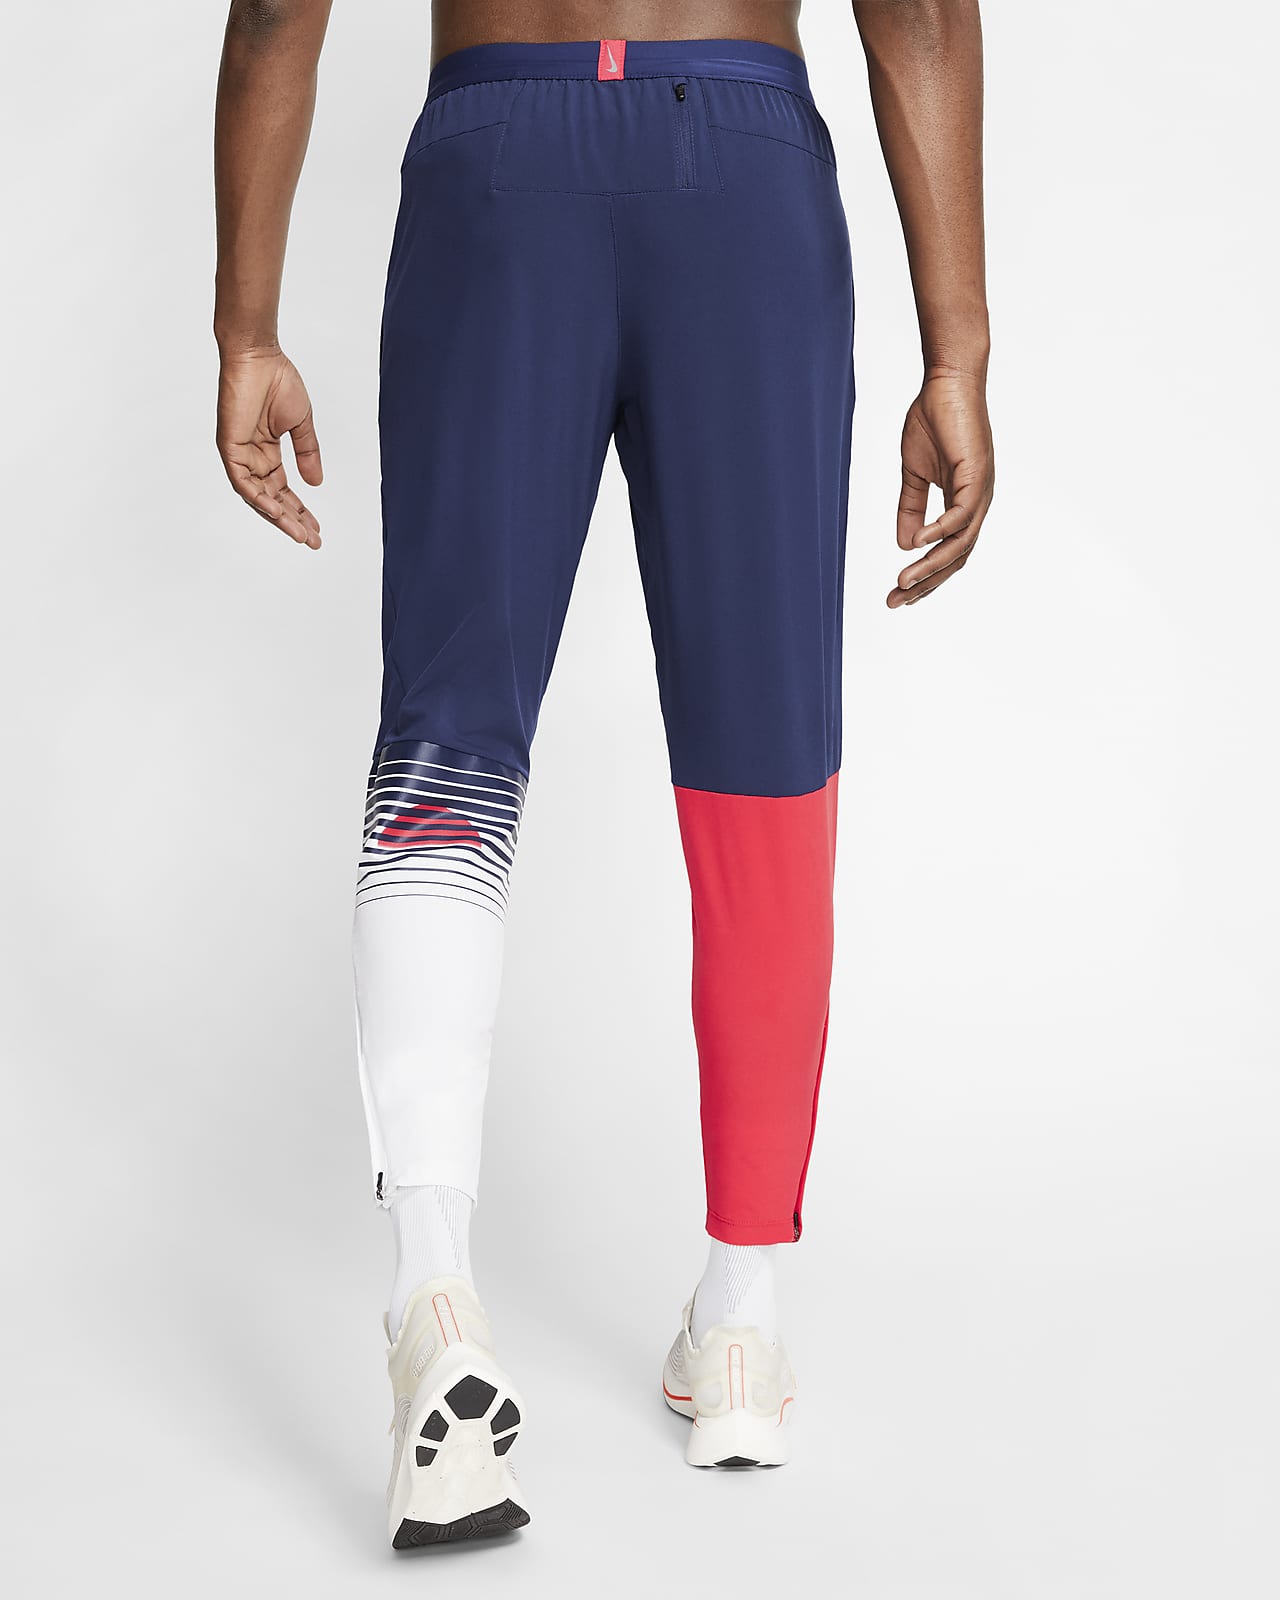 Nike公式 ナイキ ブルー リボン スポーツ ランニングパンツ オンラインストア 通販サイト